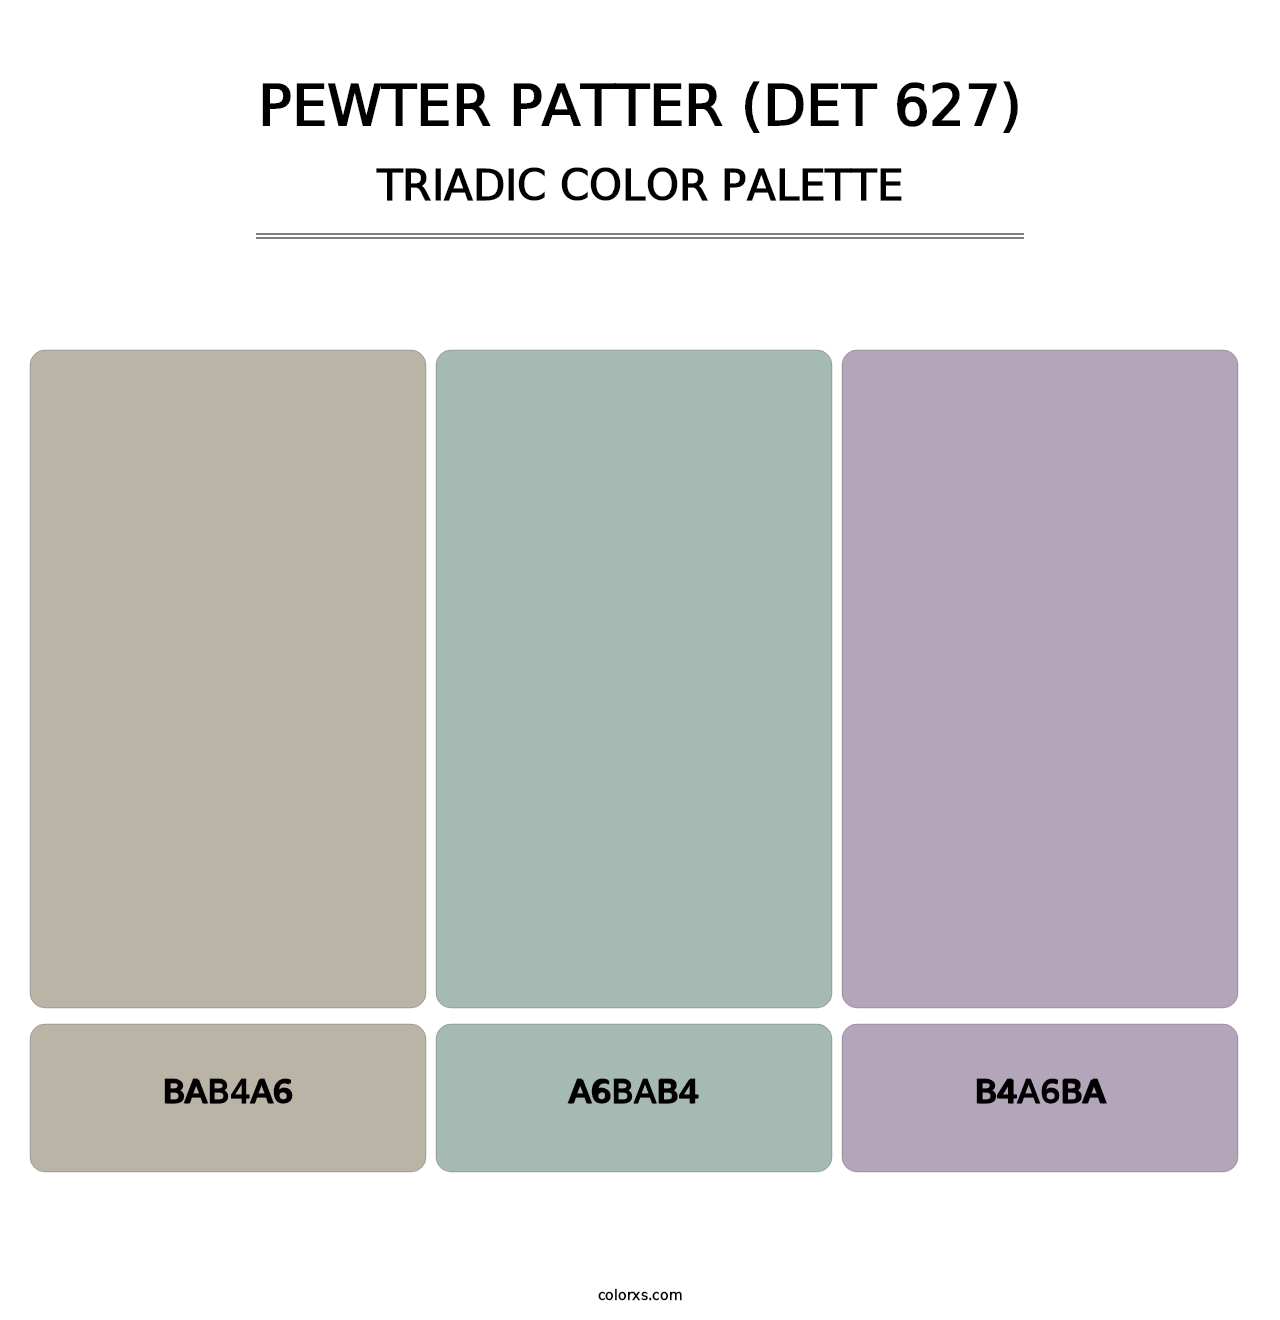 Pewter Patter (DET 627) - Triadic Color Palette